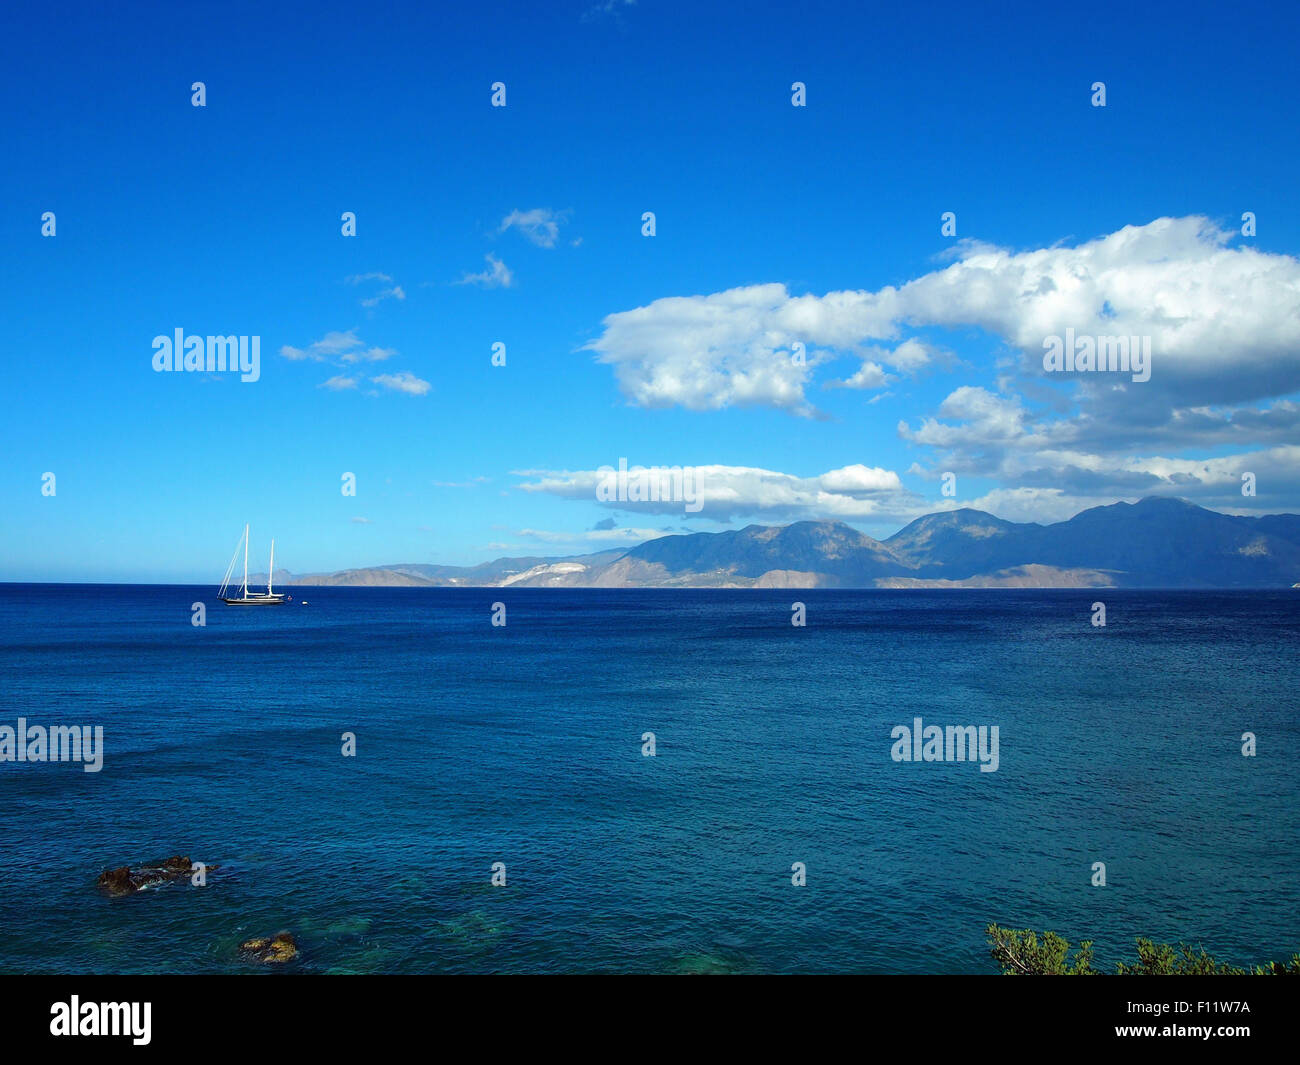 La Grèce, Crete - une vue sur le golfe de Mirabello. Mer bleue de la Méditerranée sur une chaude journée d'été. Banque D'Images